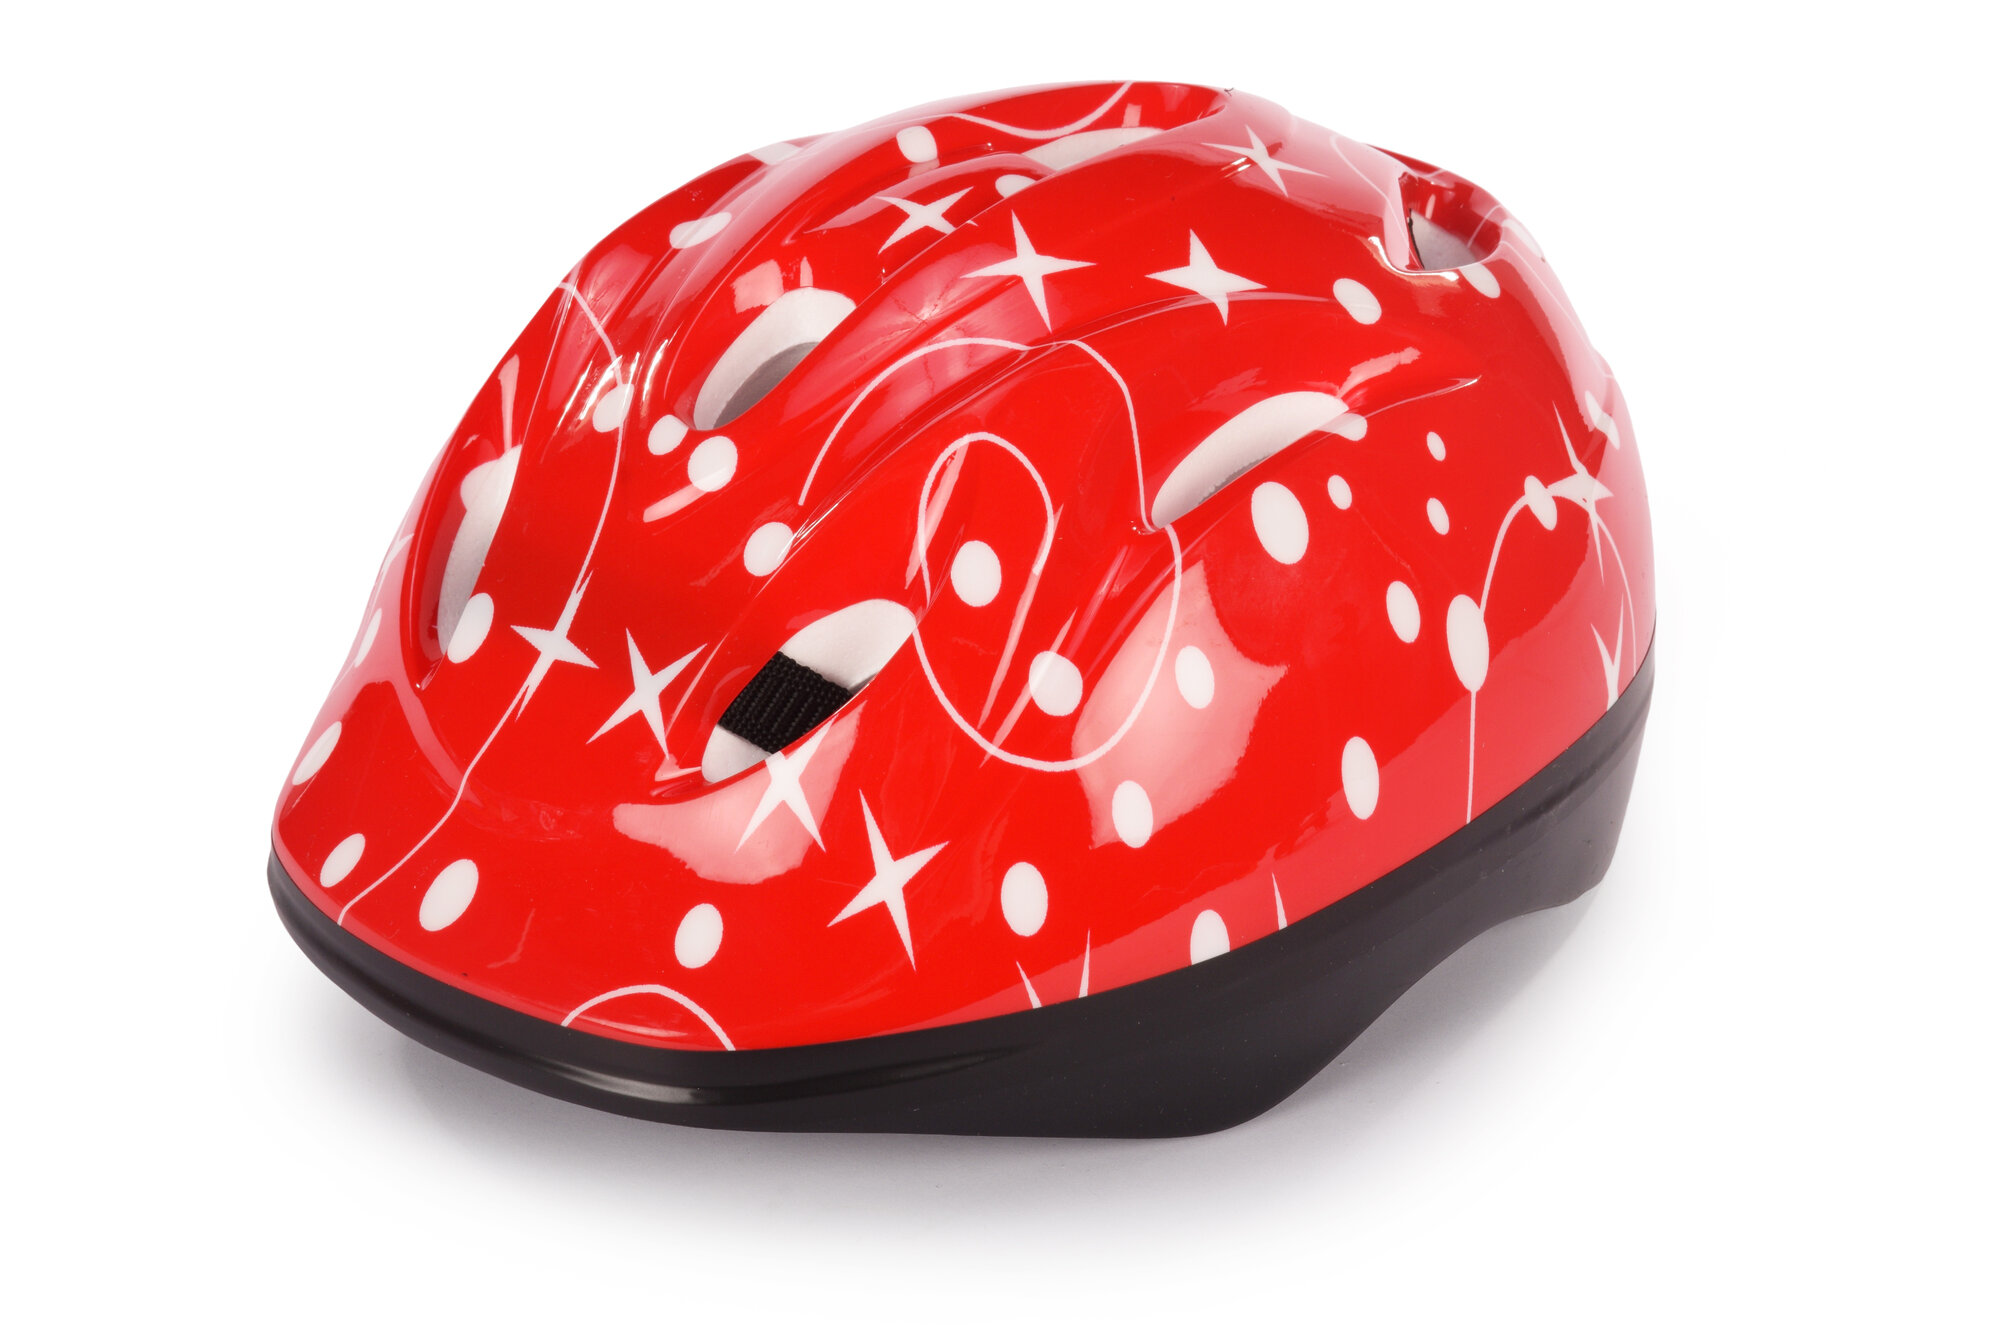 Шлем детский защитный для катания на велосипеде, самокате, роликах, скейтборде, обхват 52-54 см, размер М, 28х20х25 см, красный – 1 шт